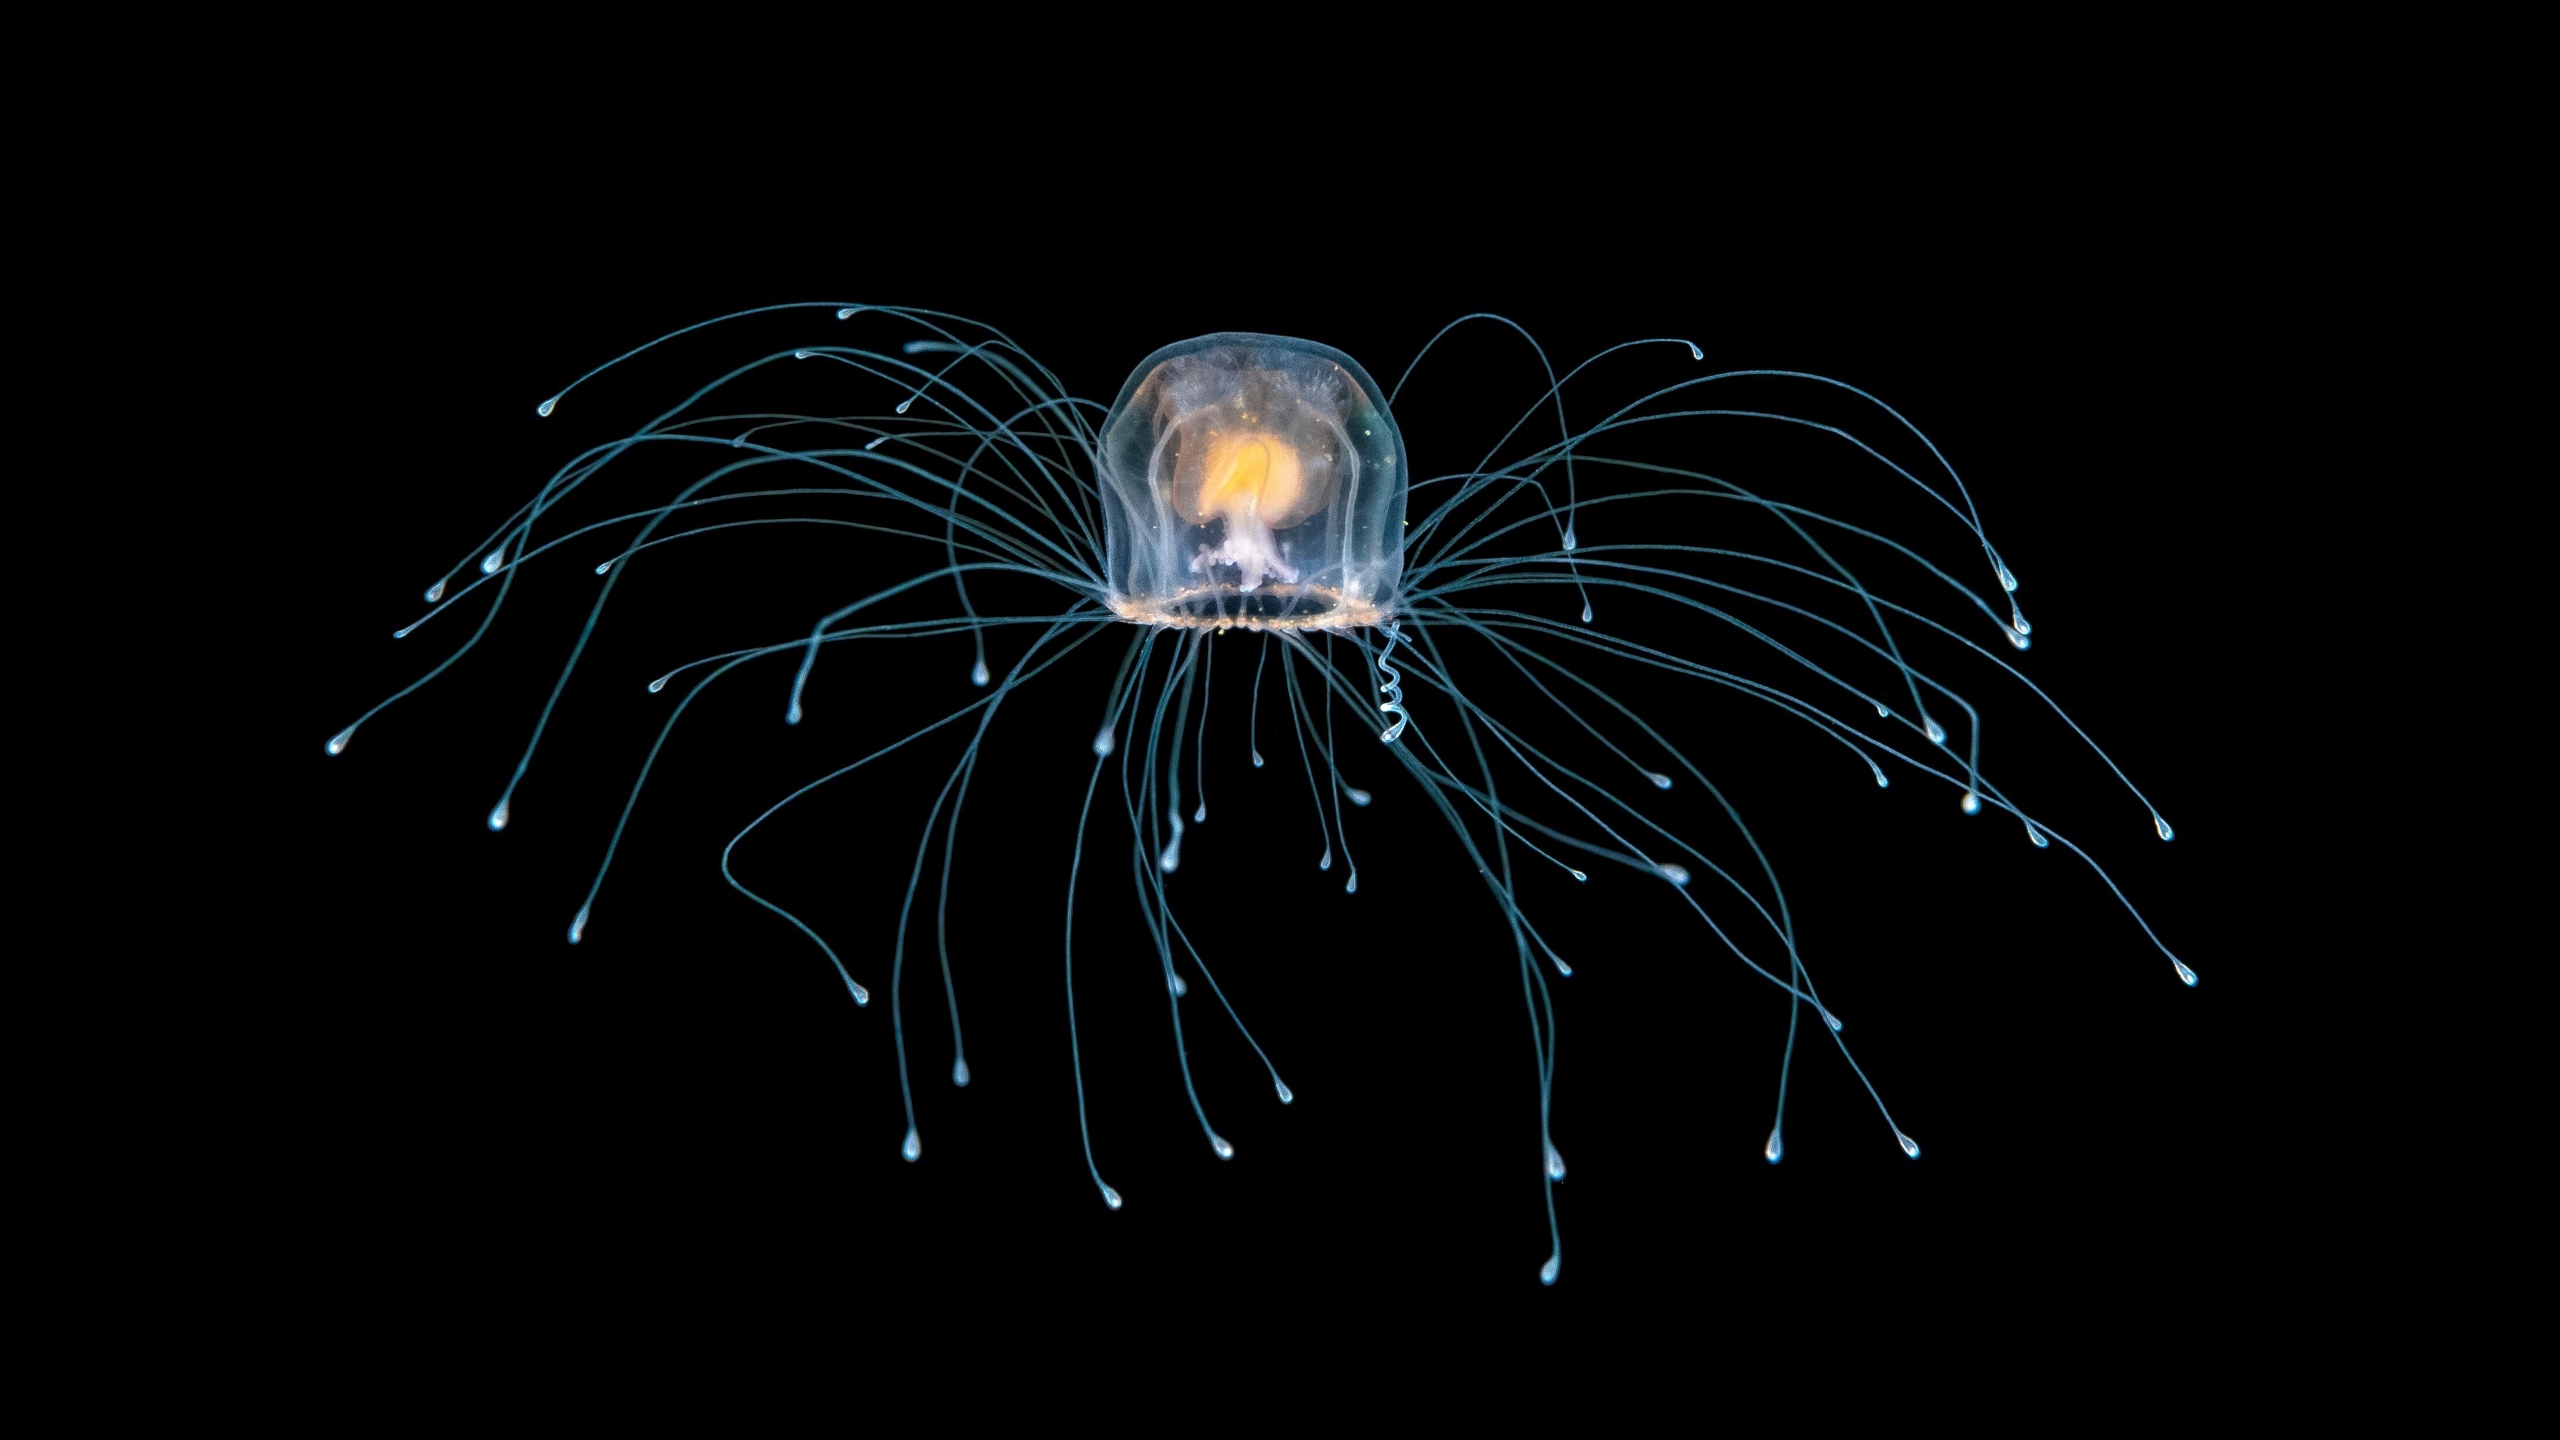 倒立水母寿命图片